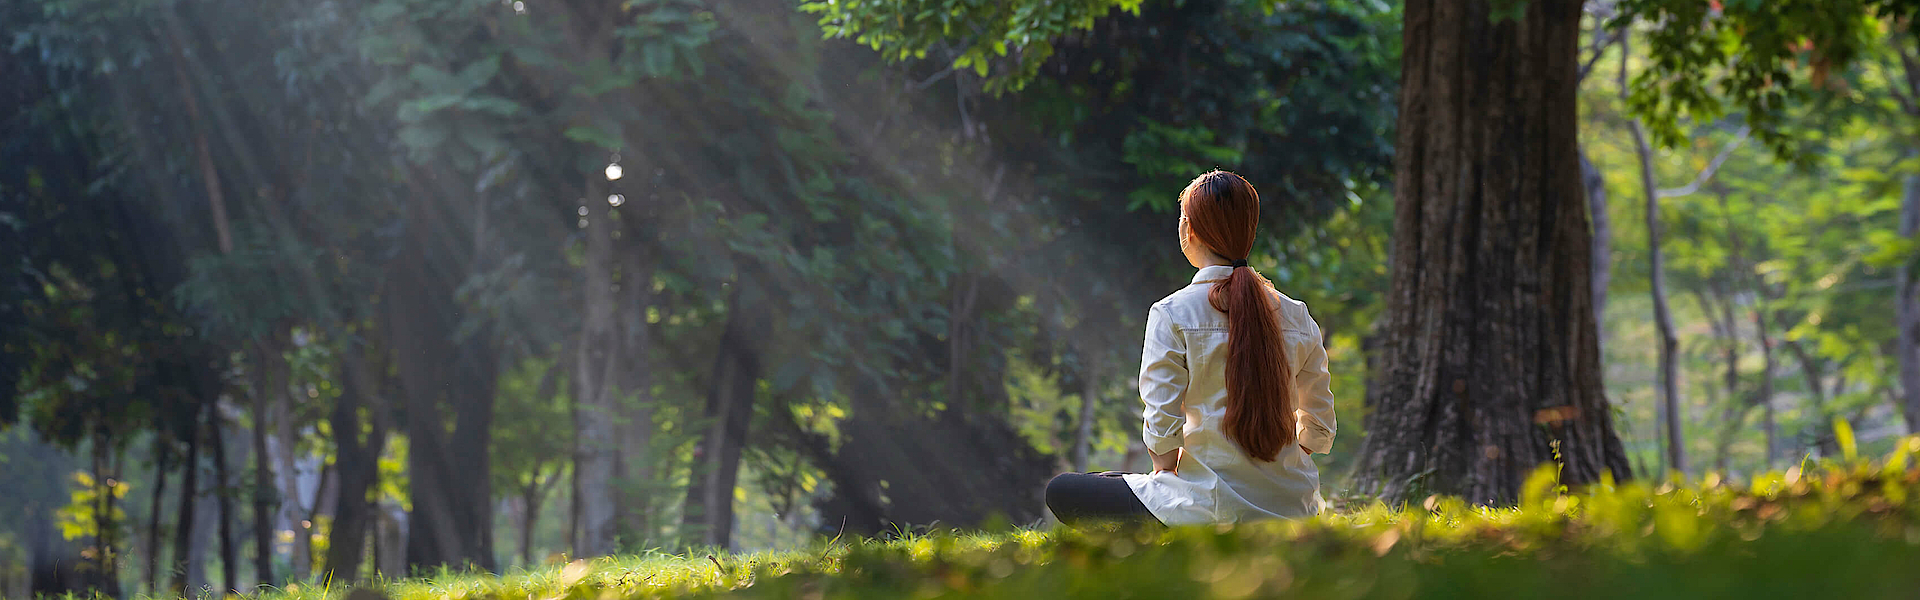 Eine Frau sitzt ganz entspannt am Waldrand auf einer Wiese, wahrscheinlich meditiert sie. Die Sonne scheint zwischen den Ästen hindurch.